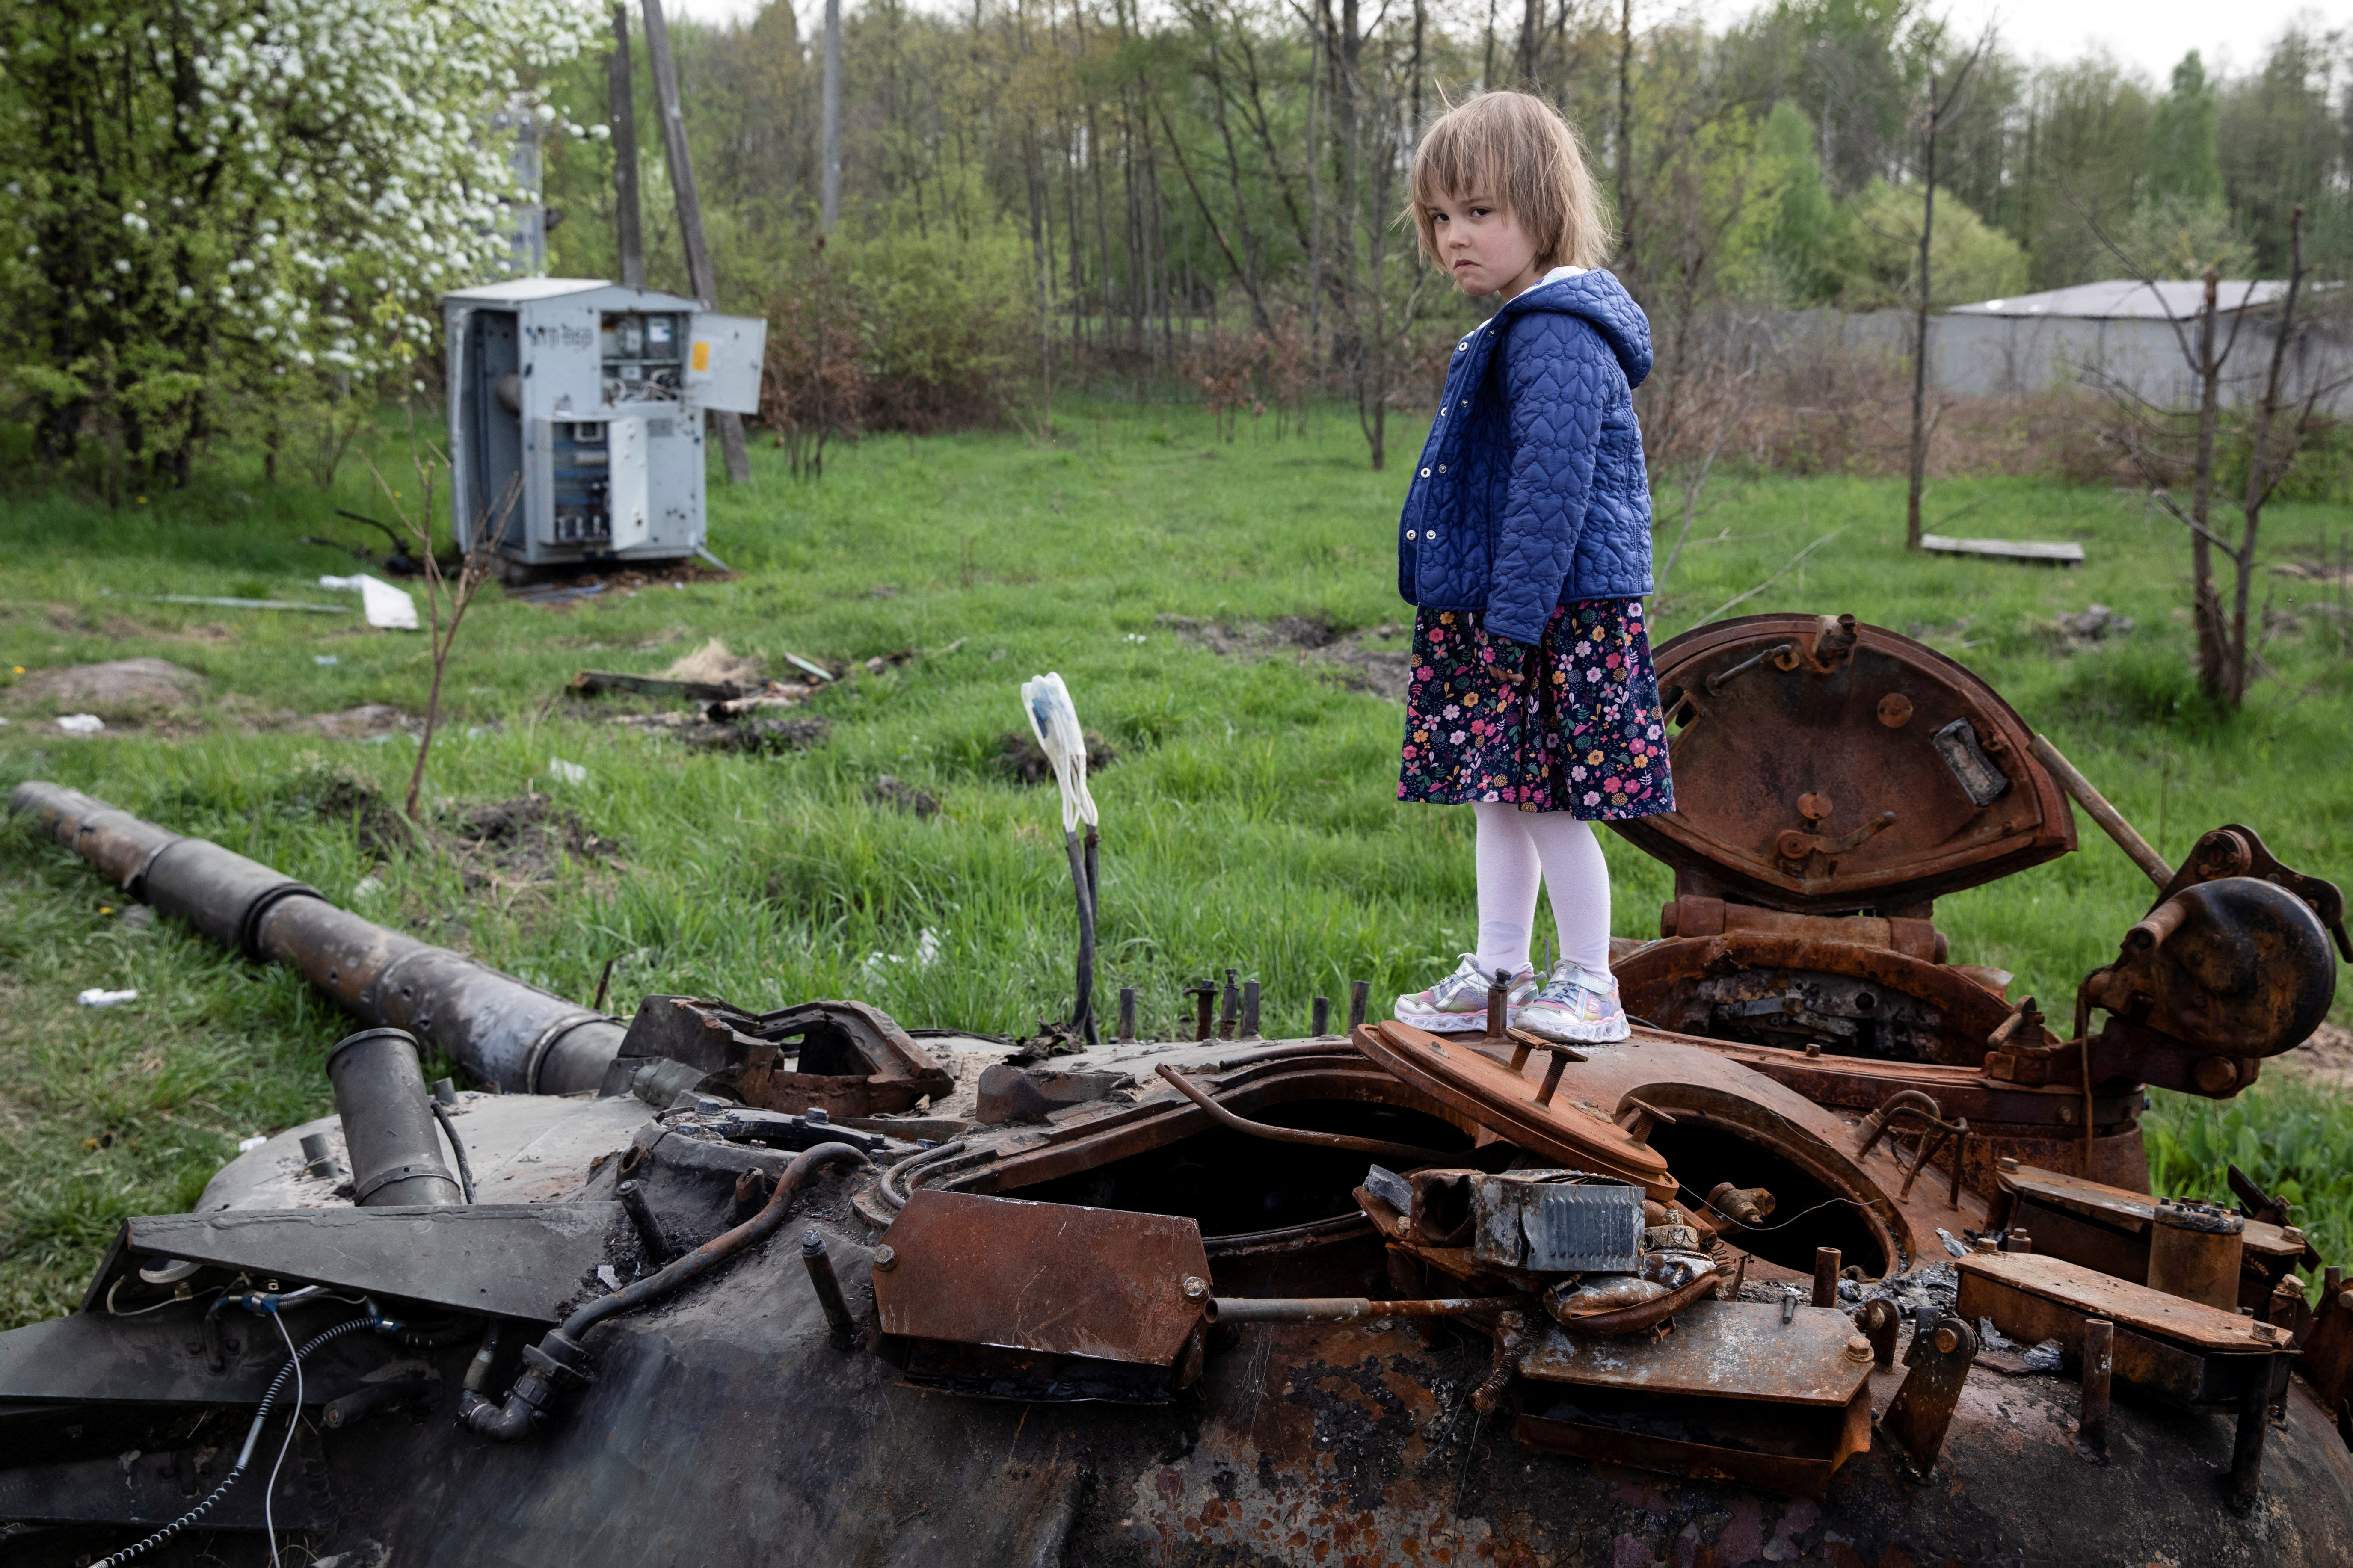 A child on a tank.